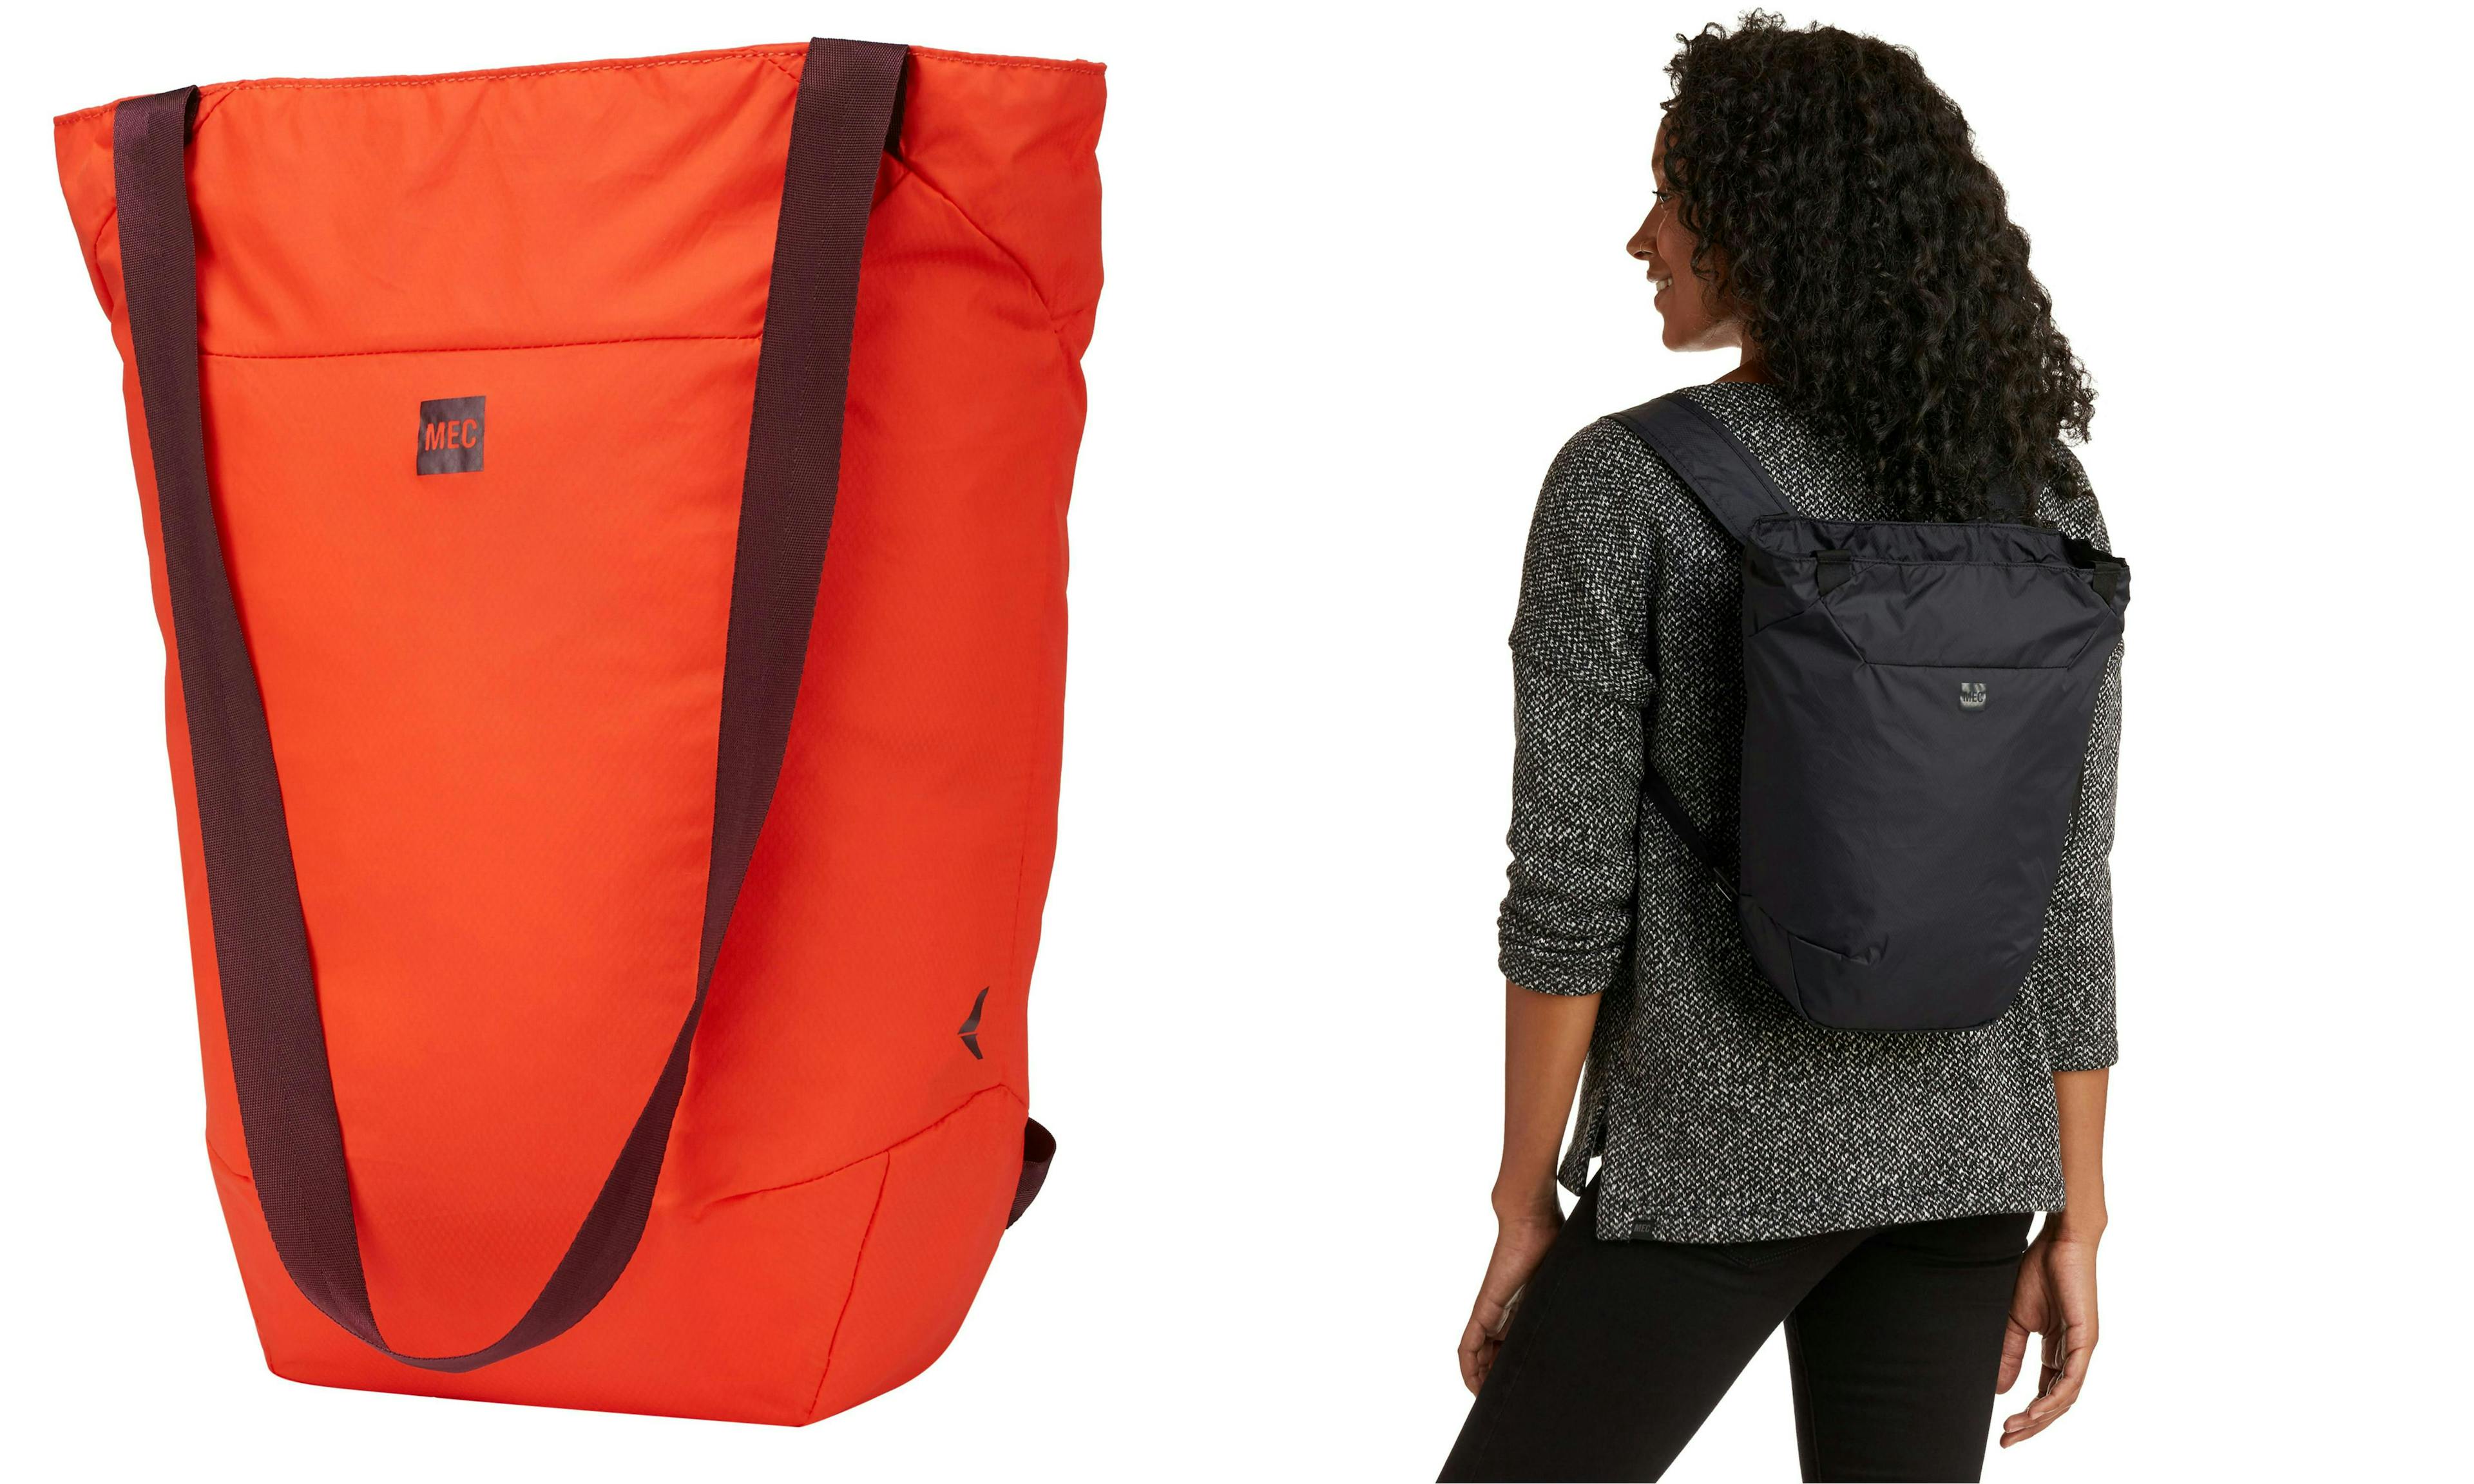 MEC travel light tote backpack